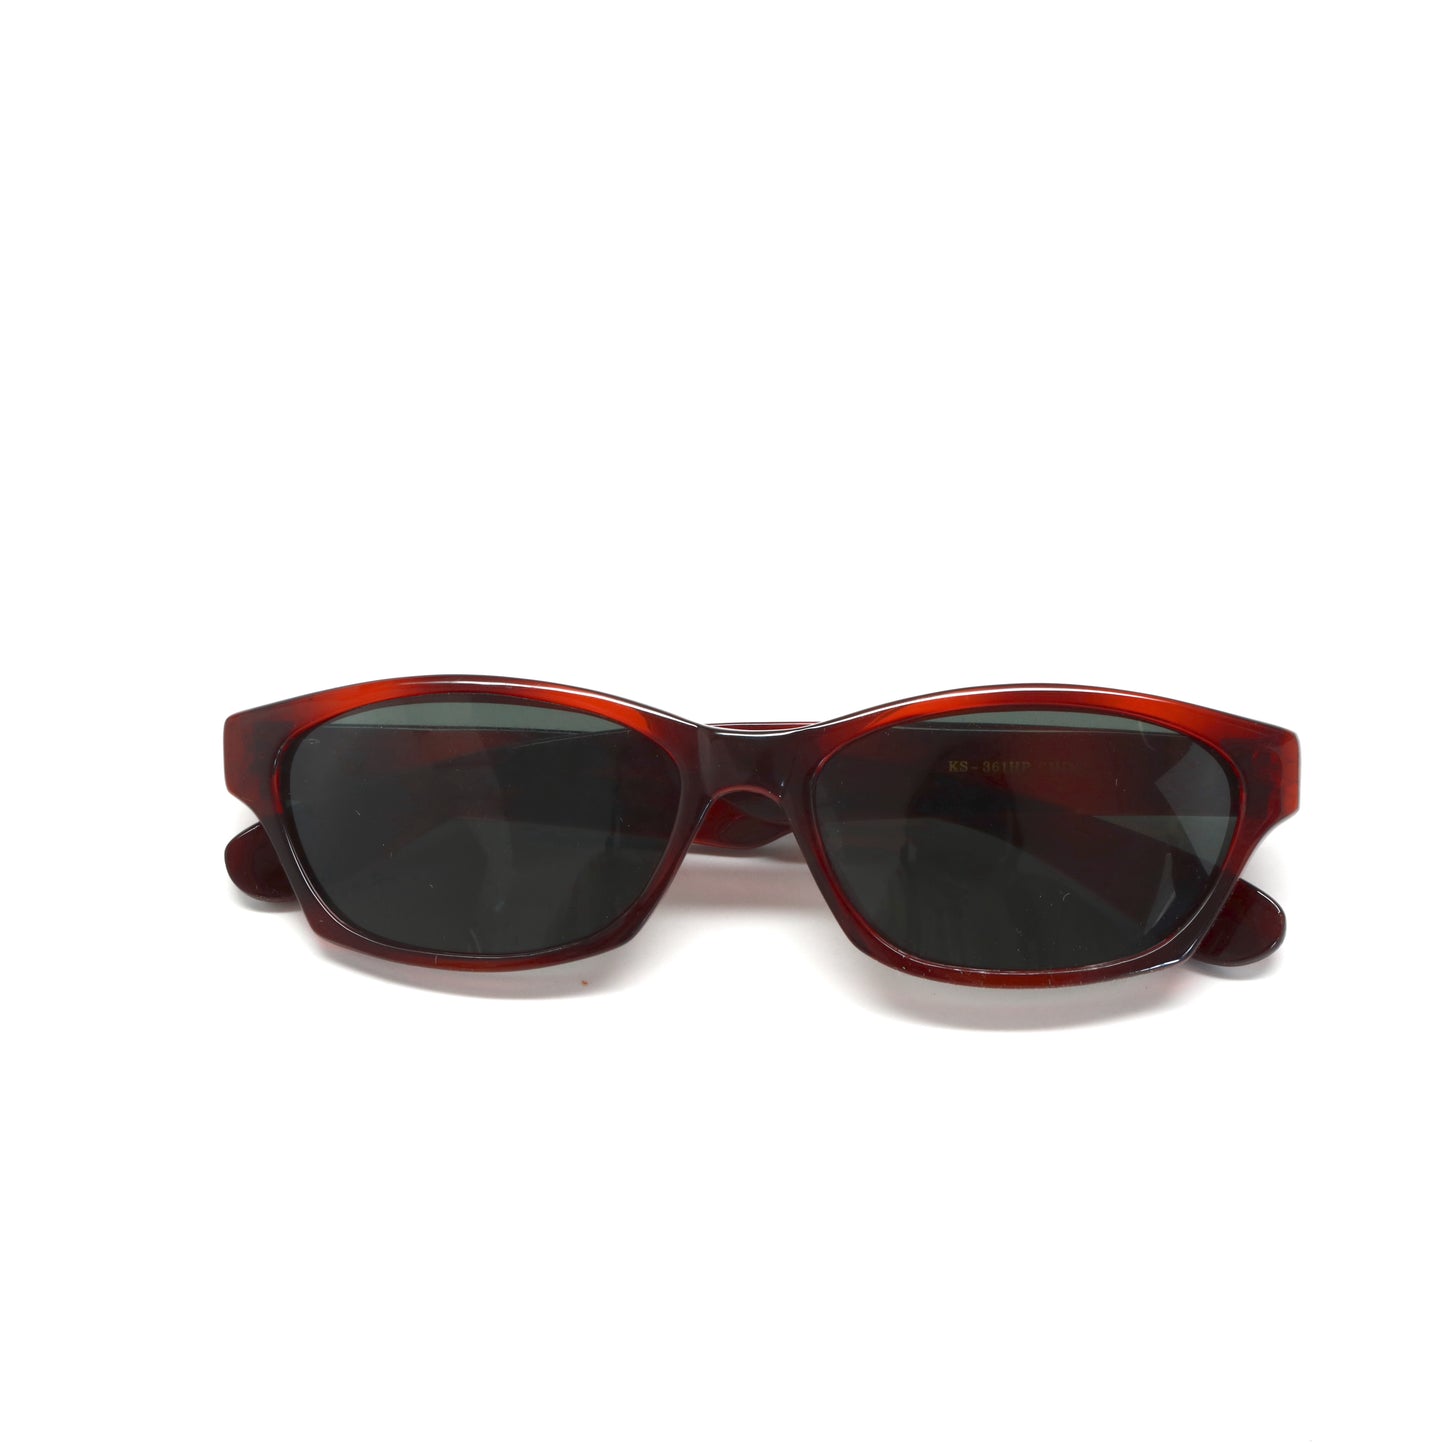 Deadstock Original Rectangular Wayfarer Frame Sunglasses - Tortoise Red